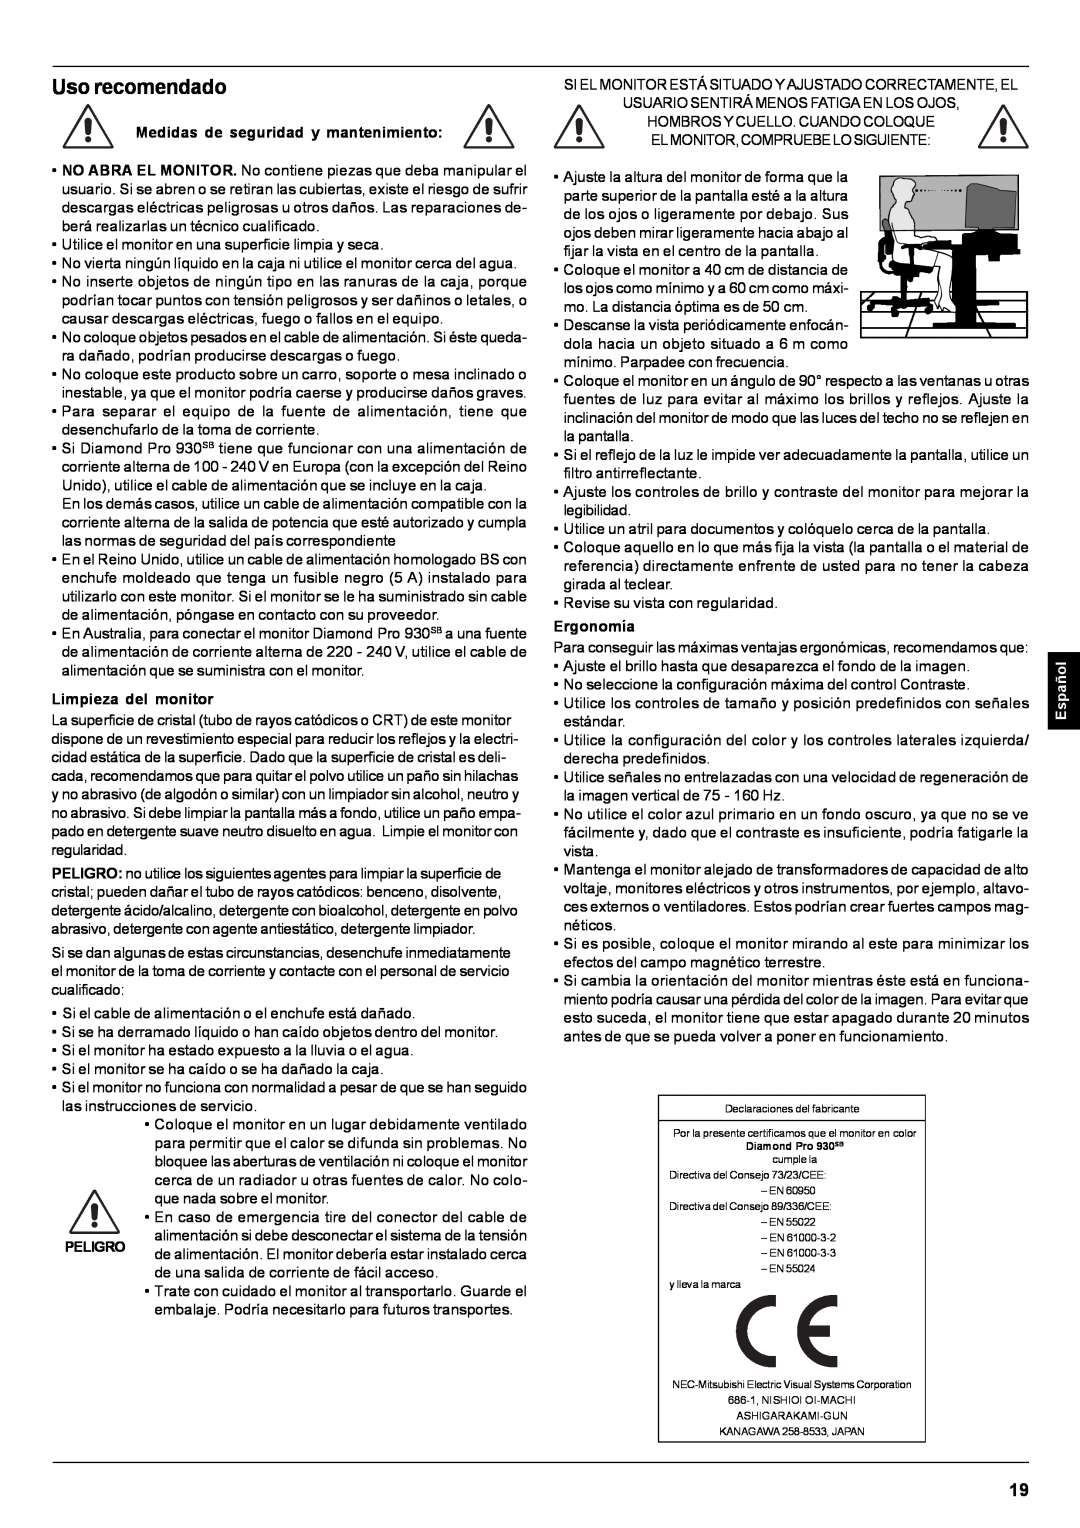 Mitsubishi Electronics Pro 930SB Uso recomendado, Medidas de seguridad y mantenimiento, Limpieza del monitor, Peligro 